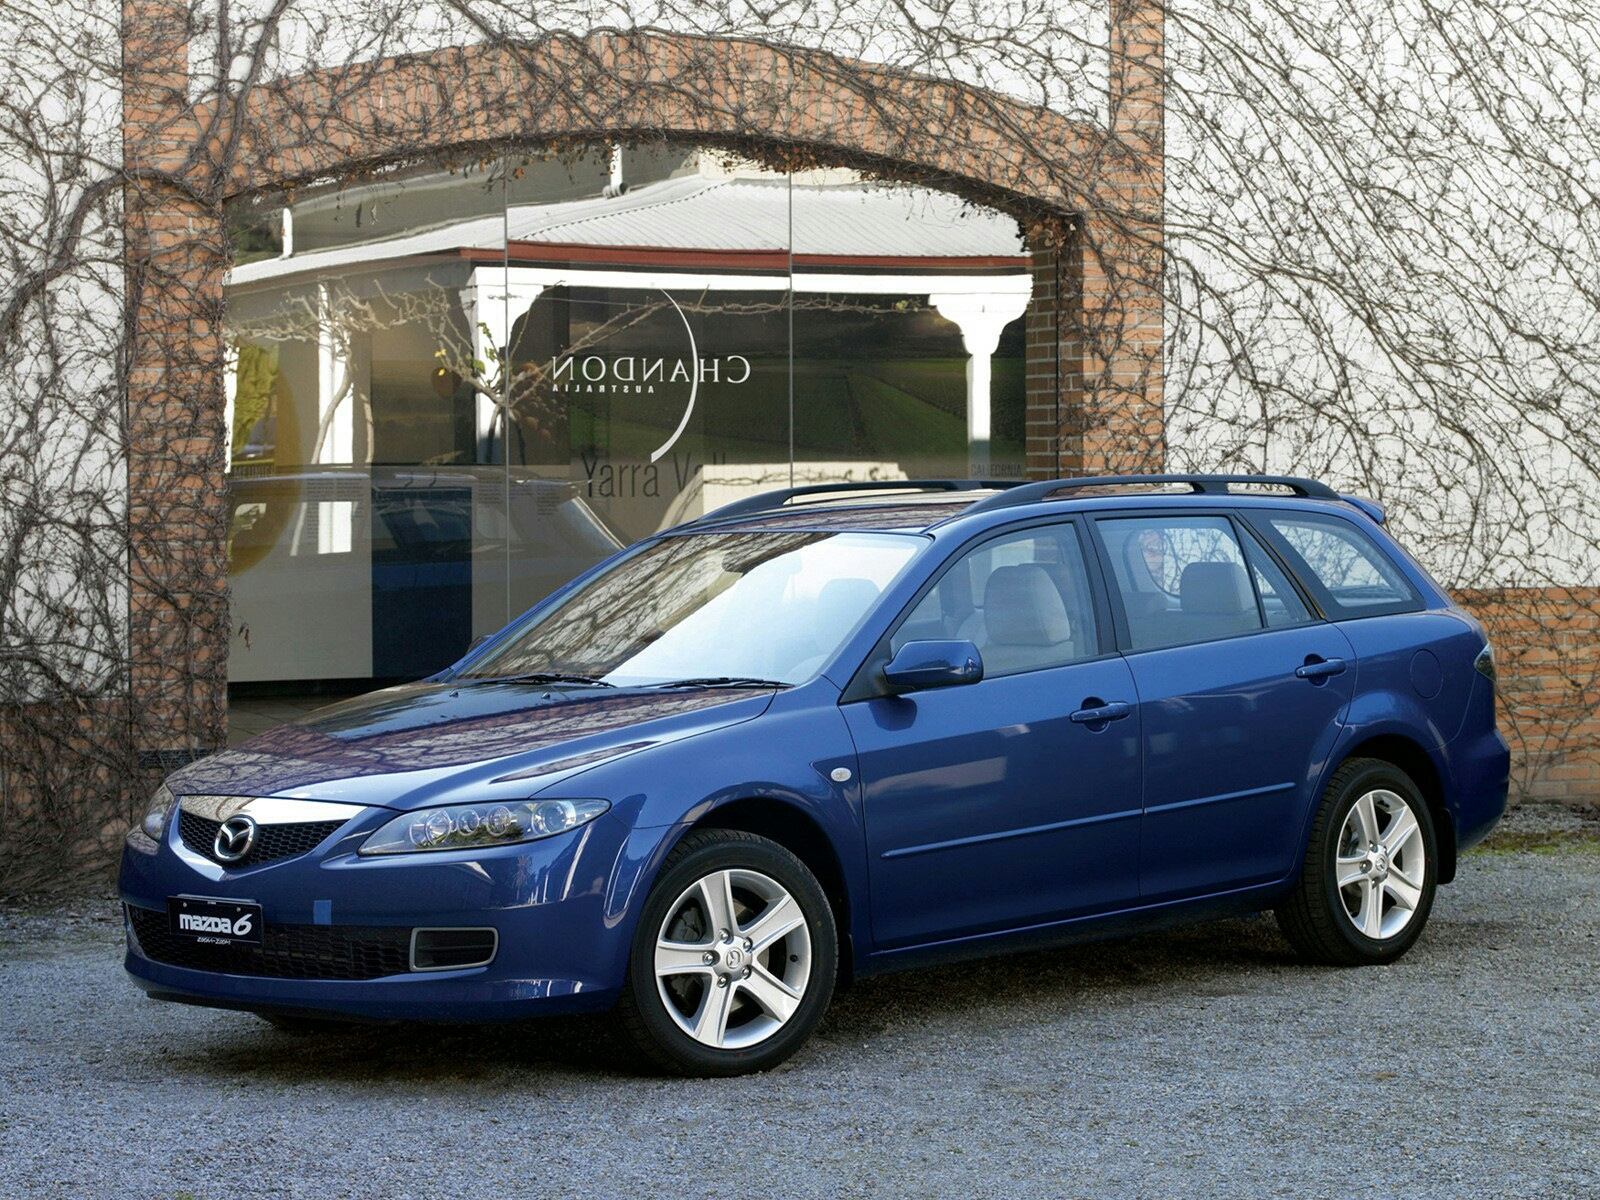 Мазда gg универсал. Mazda 6 2006 универсал. Mazda 6 gg универсал. Mazda 6 универсал 2005. Мазда 6 универсал 2003.